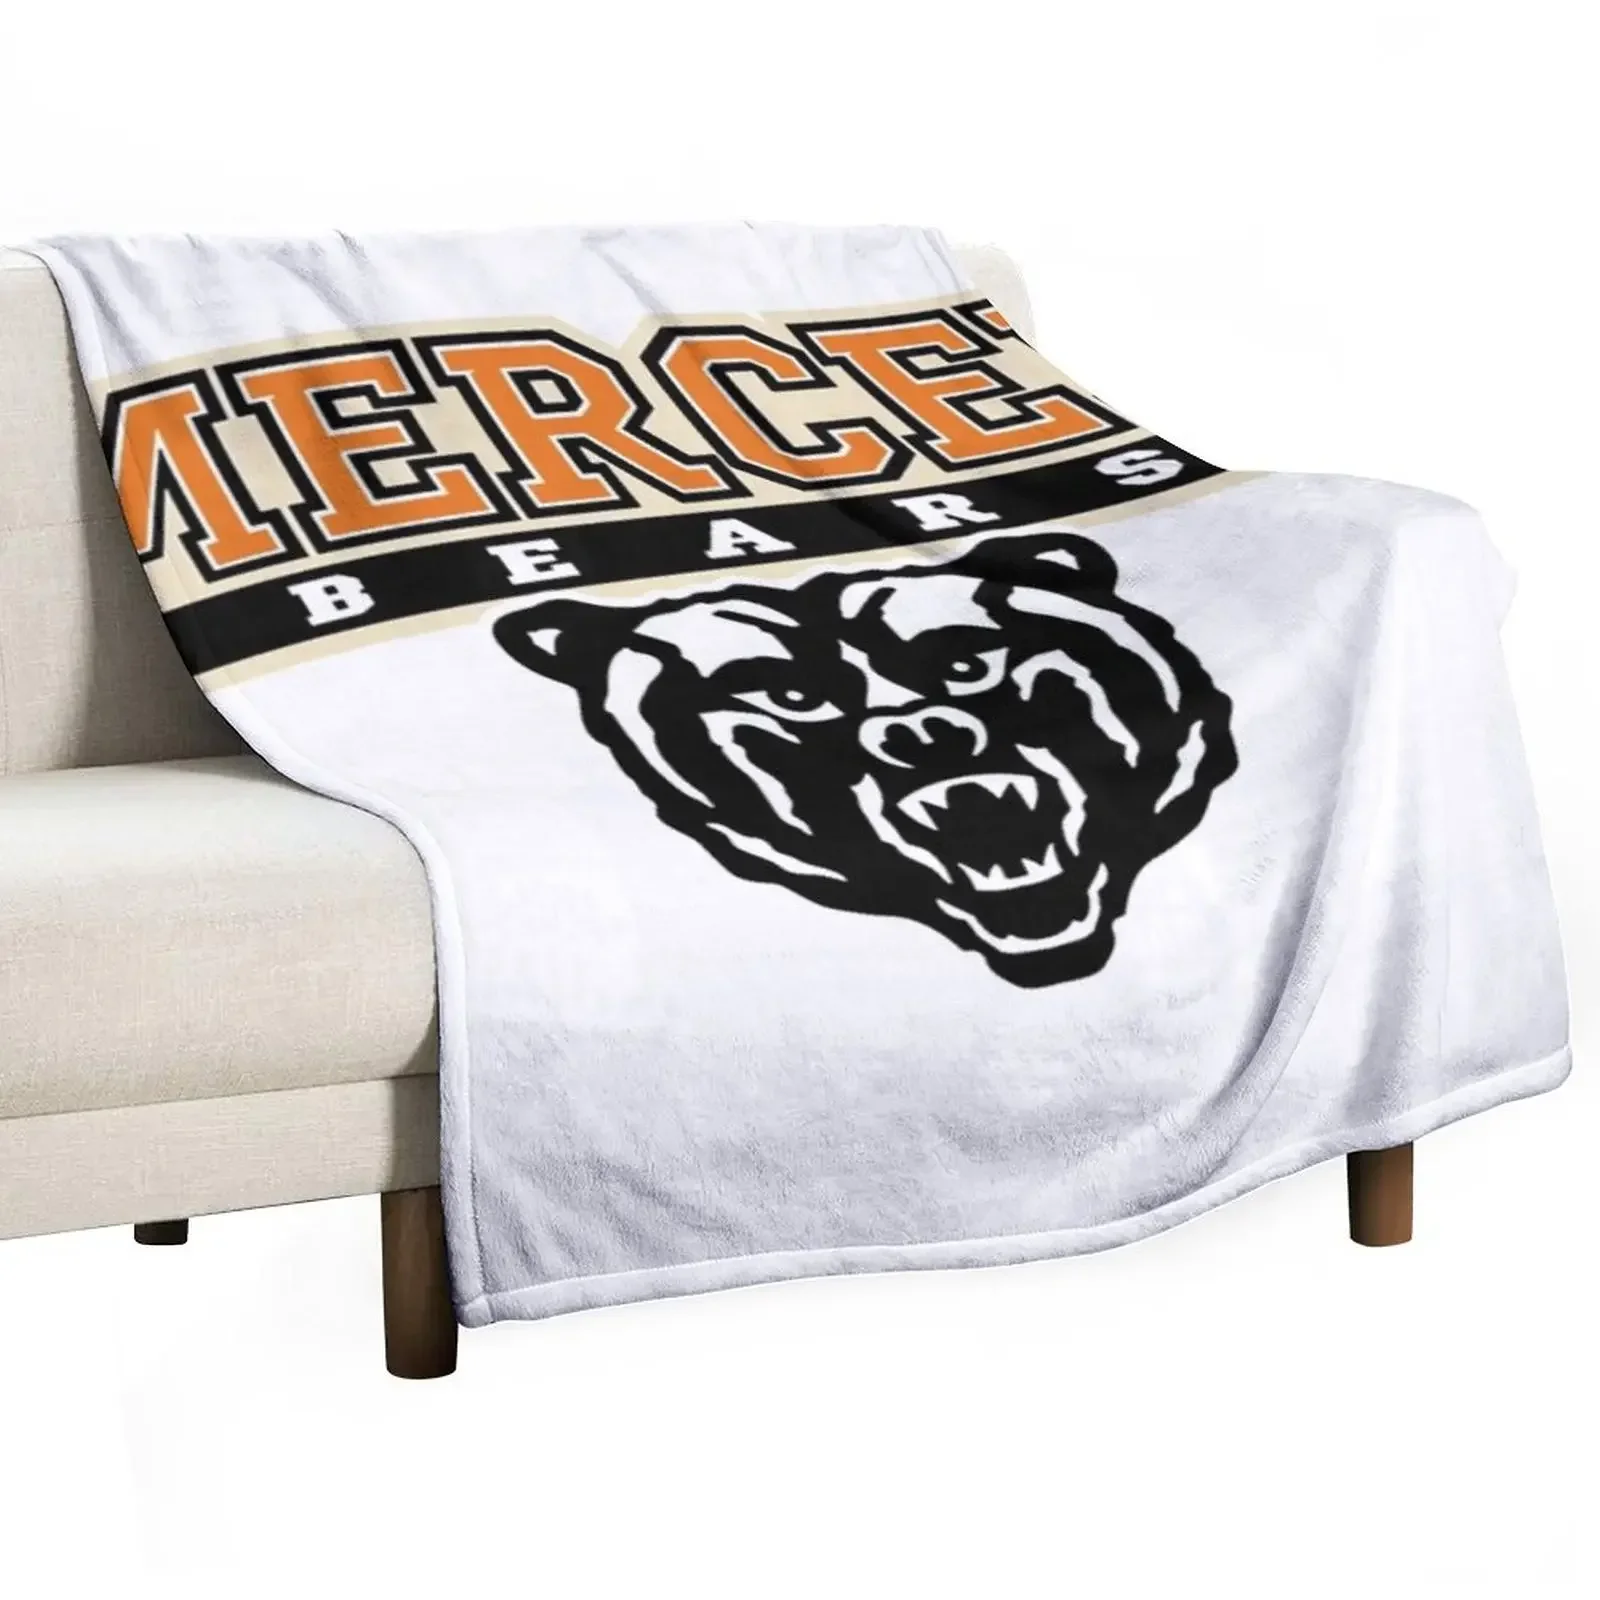 

Одеяло для дивана Mercer bear 2, тонкие туристические одеяла